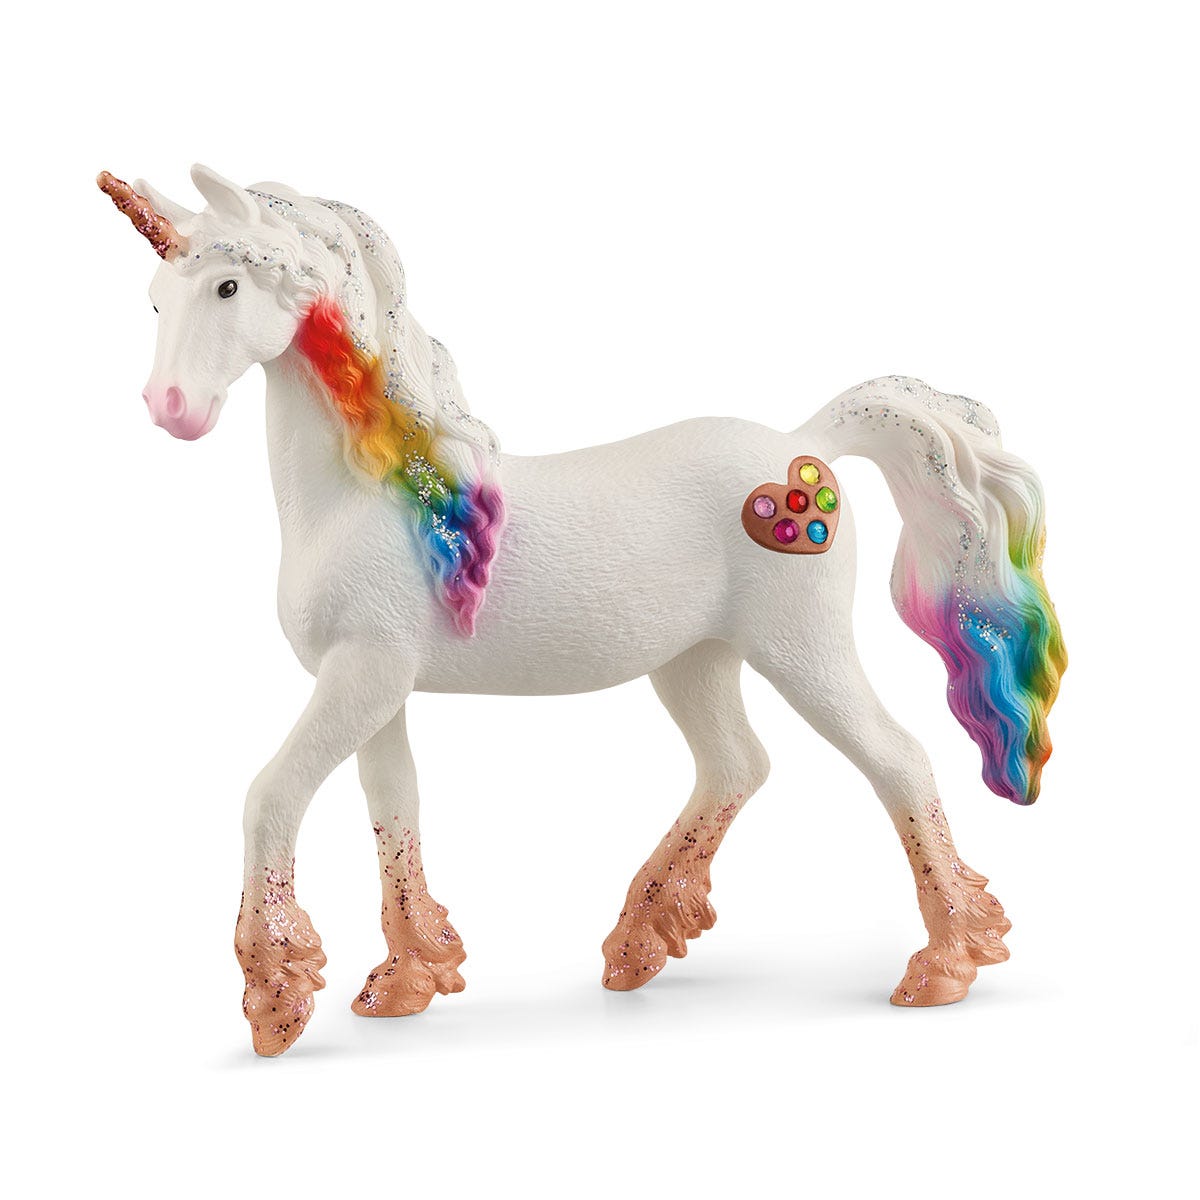 Schleich Winged Rainbow Unicorn : Target